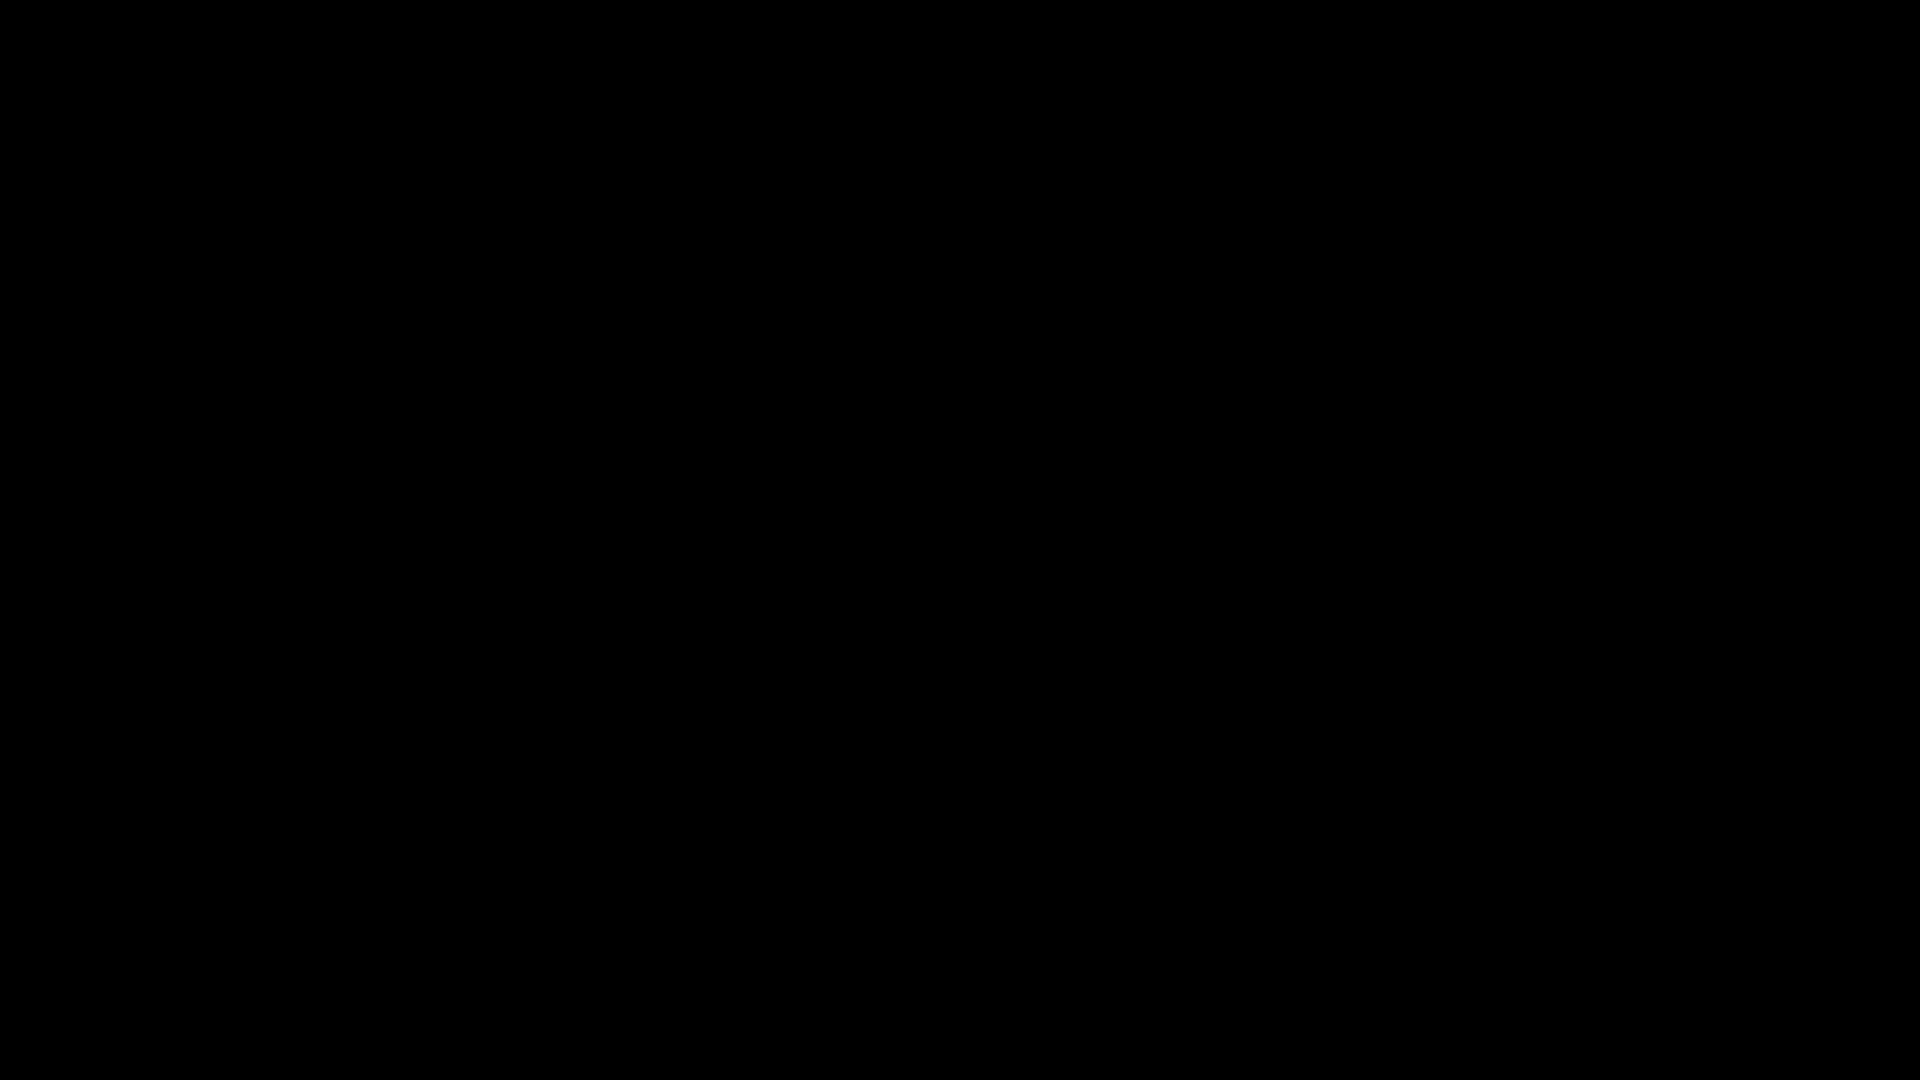 Dasleuchtende Und Kühne Roblox-logo Wallpaper